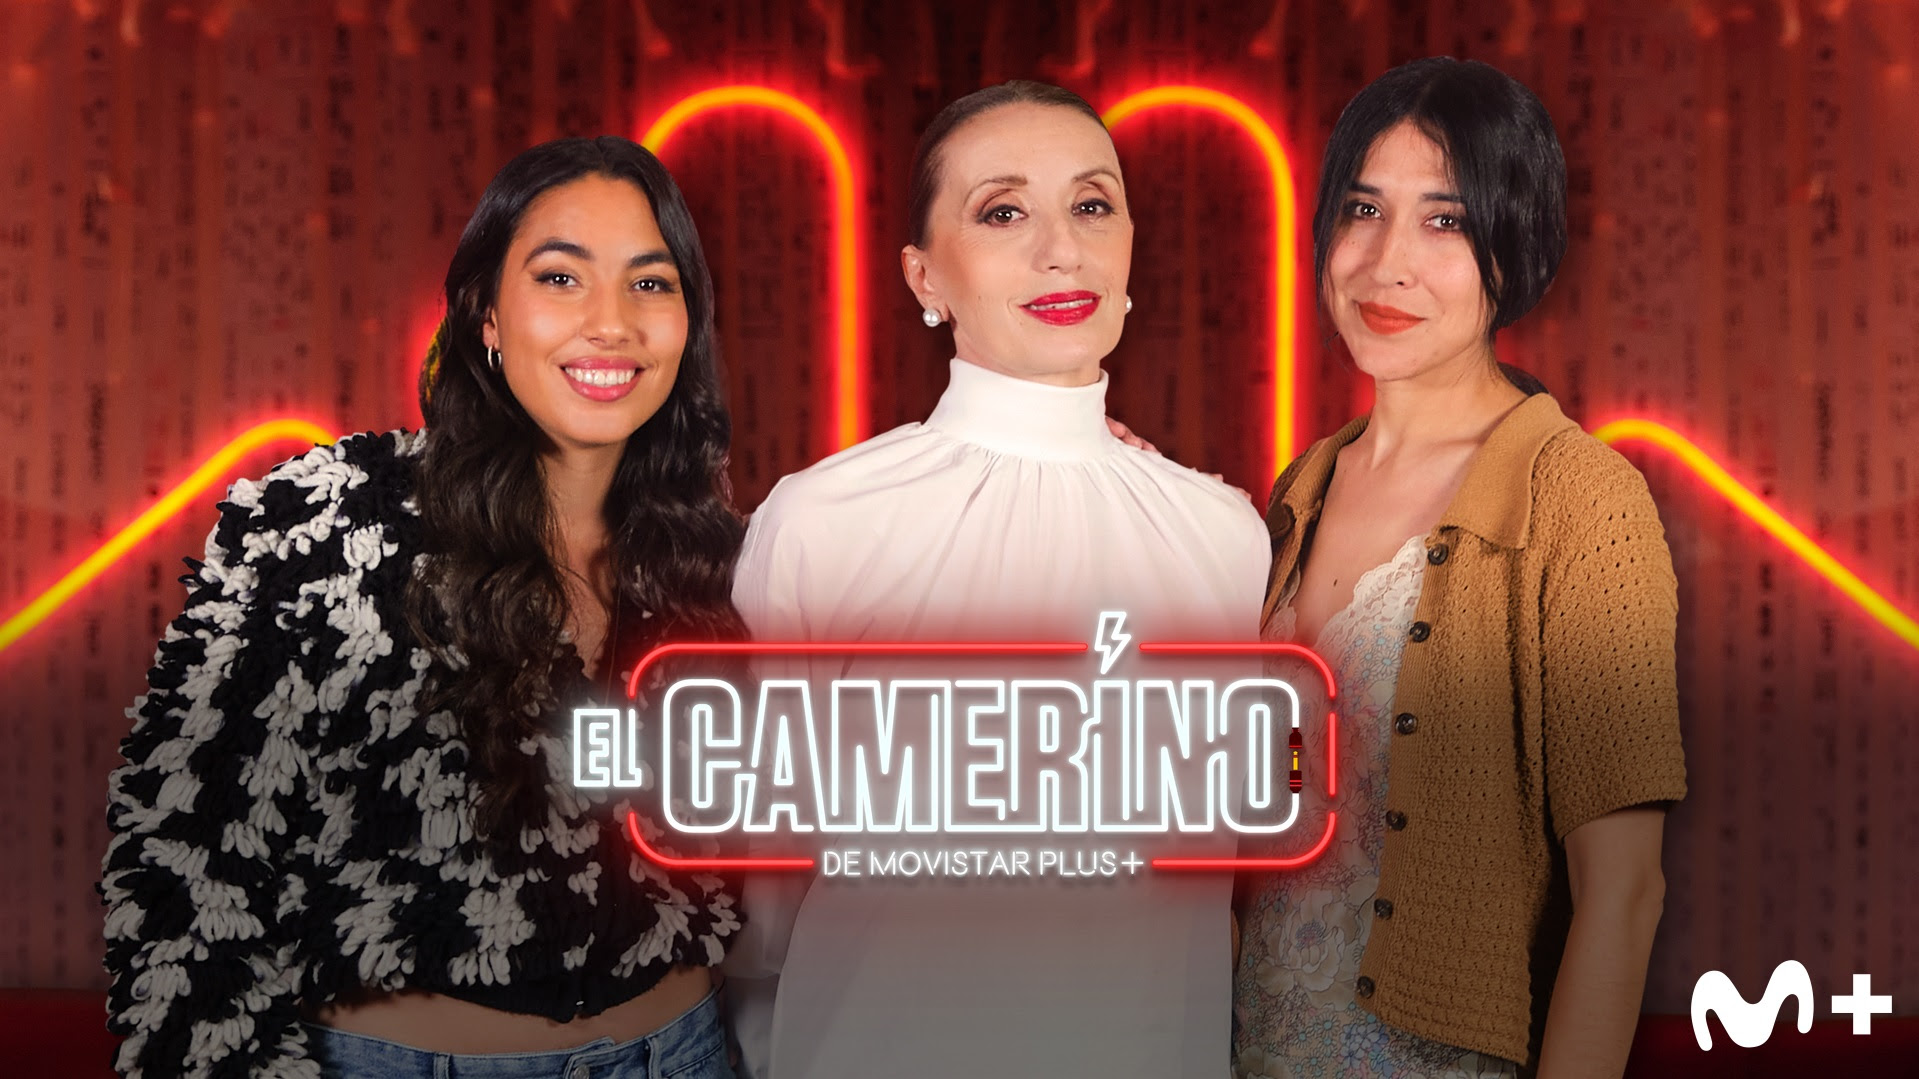 EL CAMERINO: Luz Casal, Anni B Sweet y María José Llergo, protagonistas de la próxima entrega del show musical de Movistar Plus+